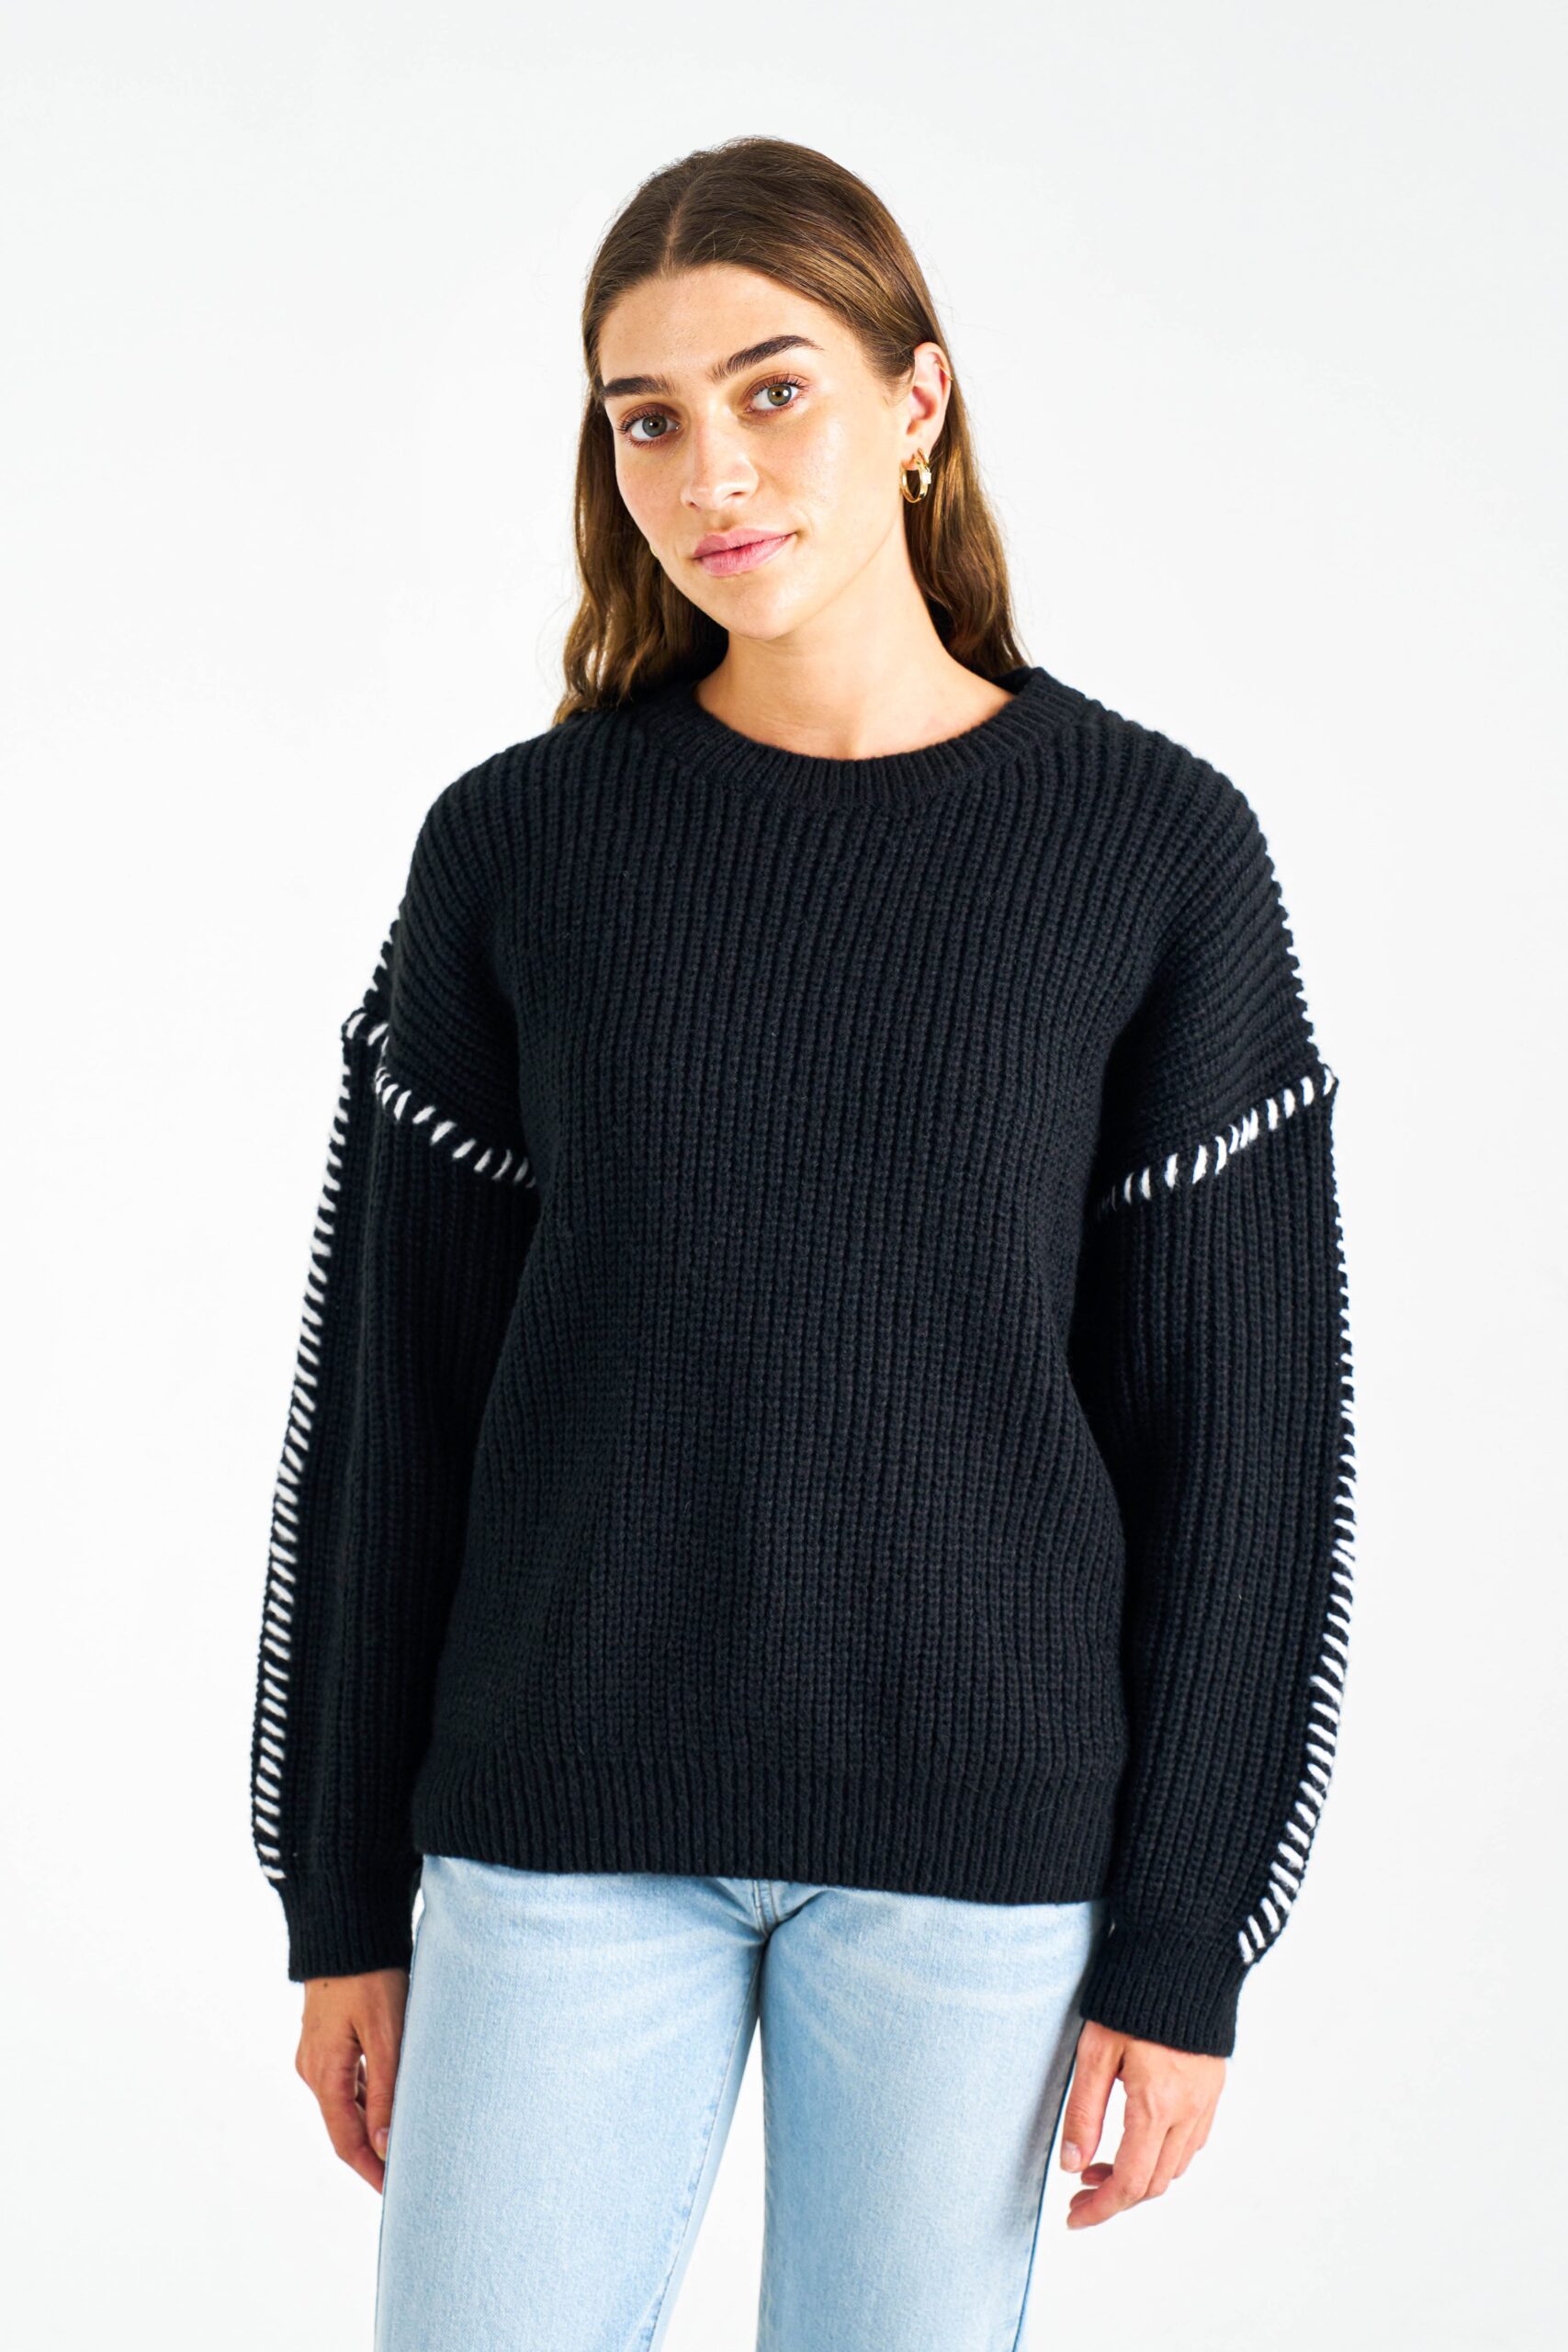 boho&primrose women clothing wholesale knitwear -GABRIELA KNIT TOP-BLACK WHITE